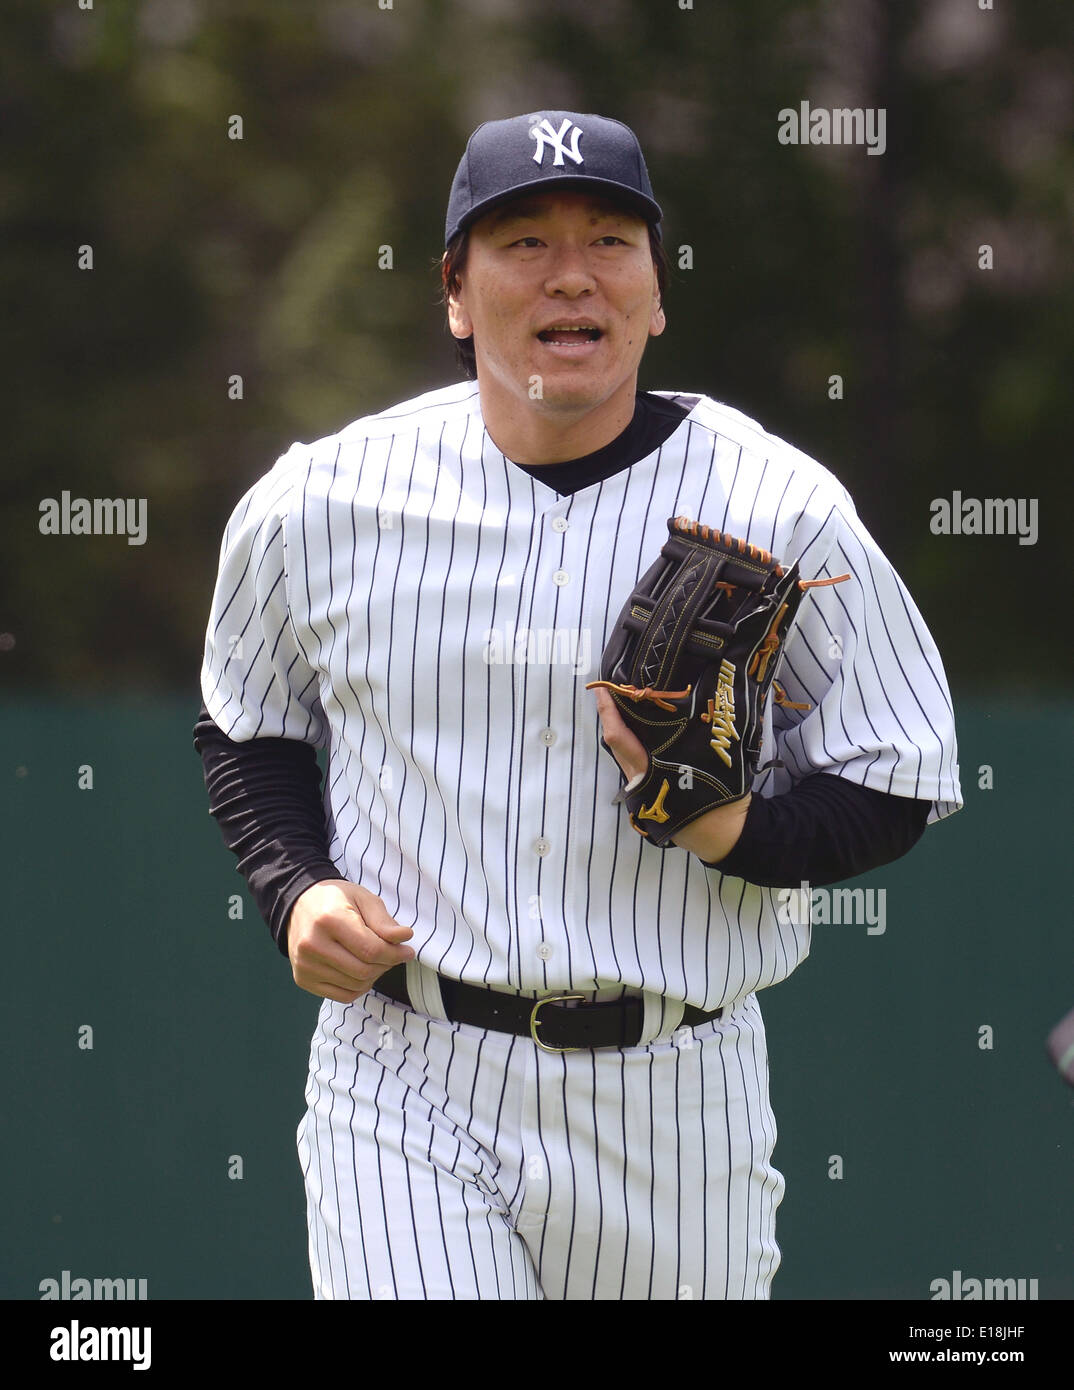 Cooperstown, New York, USA. 24th May, 2014. Hideki Matsui (Yankees